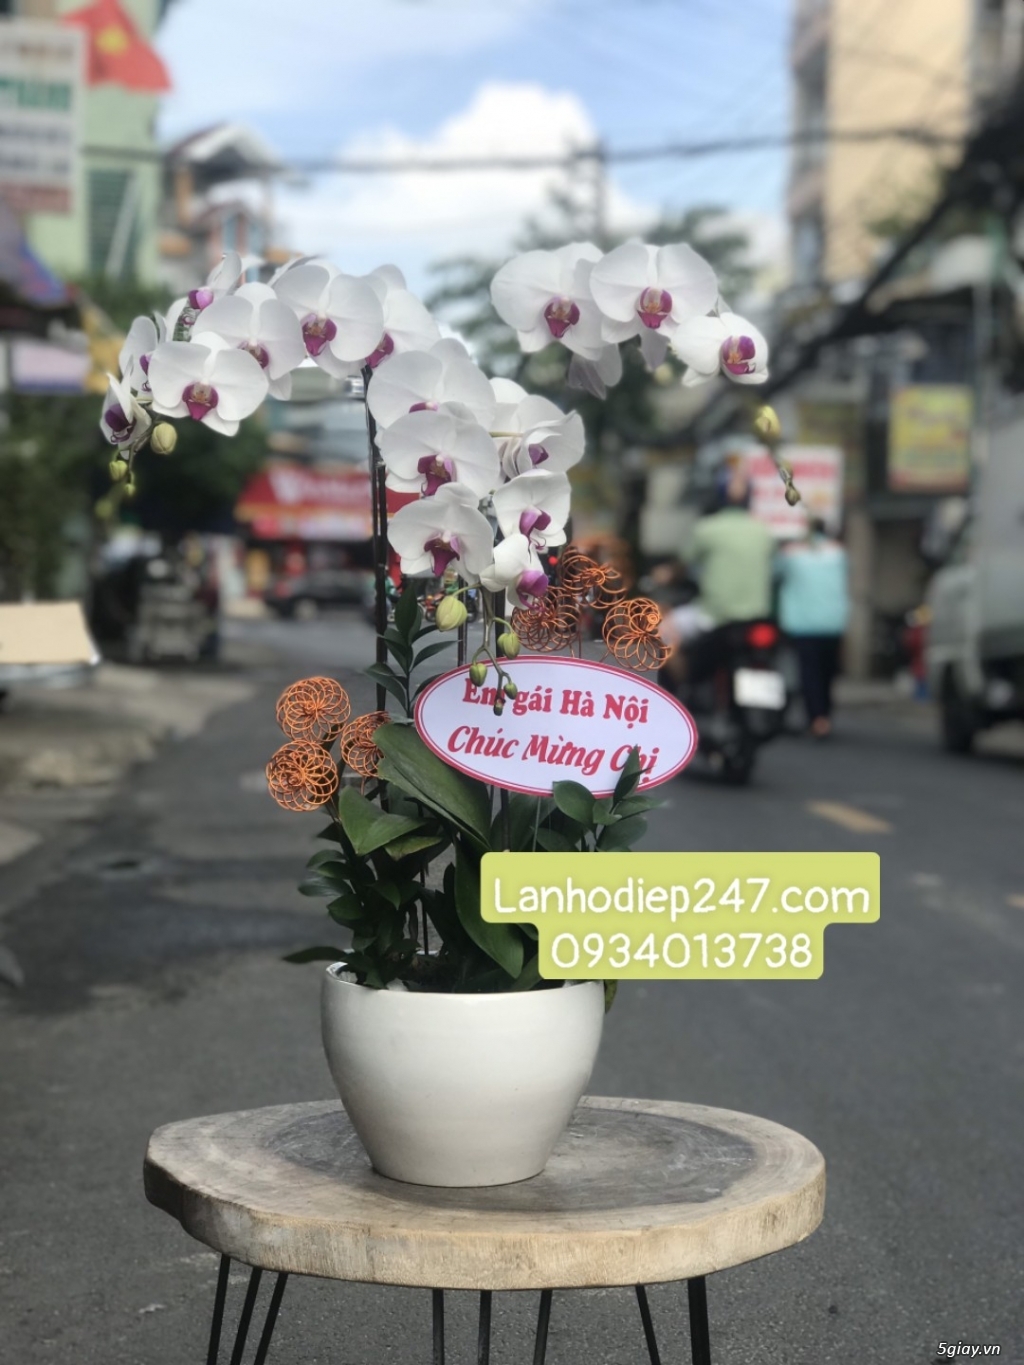 Shop Hoa Lan 247 Sài Gòn cung cấp lan hồ điệp chất lượng 0934013738 - 13